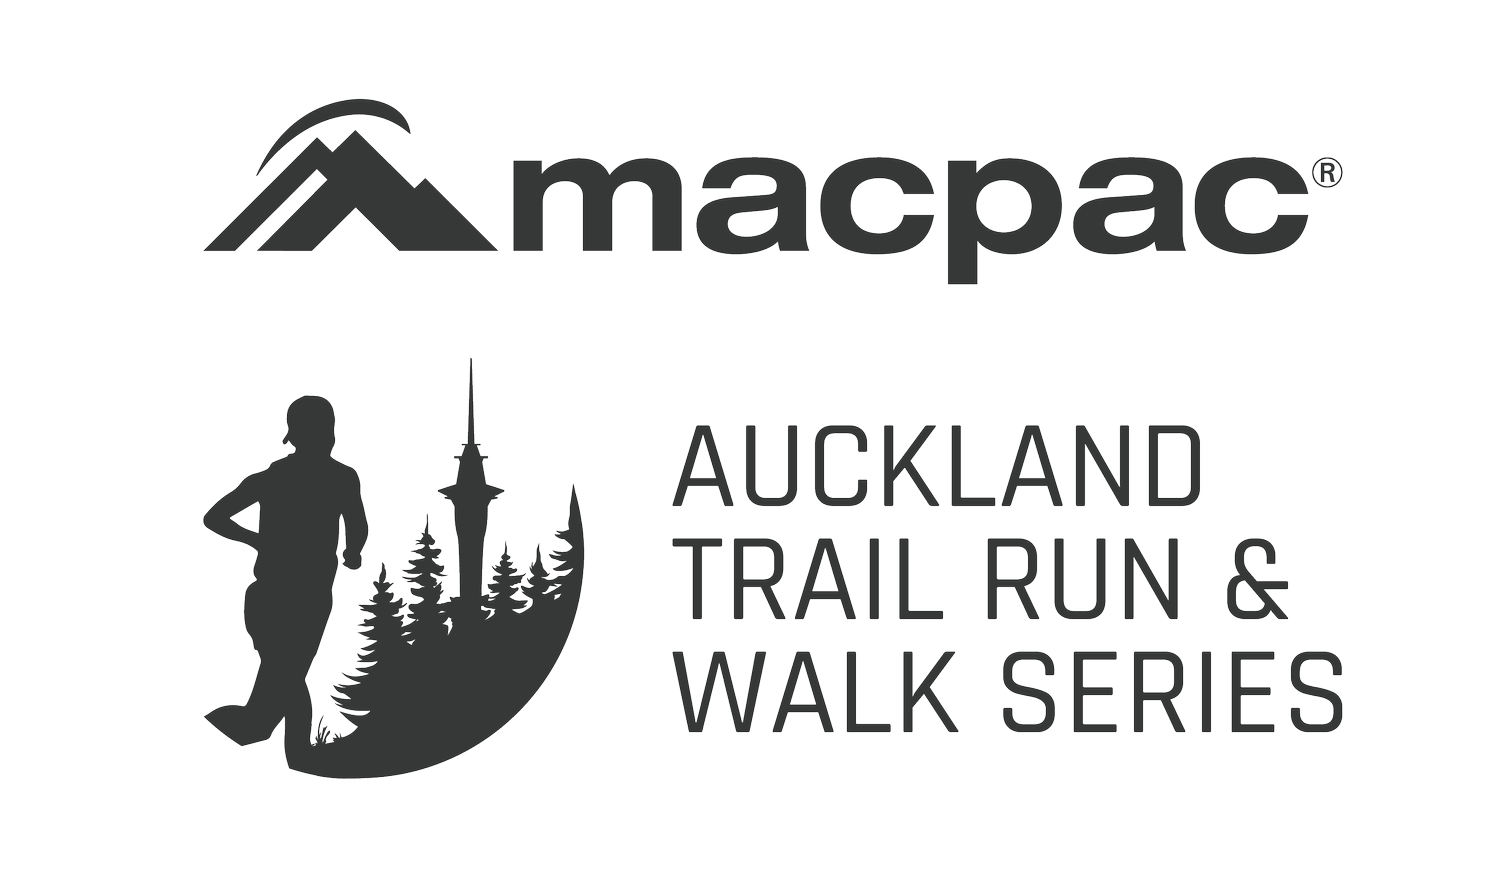 Macpac Auckland Trail Run & Walk Series